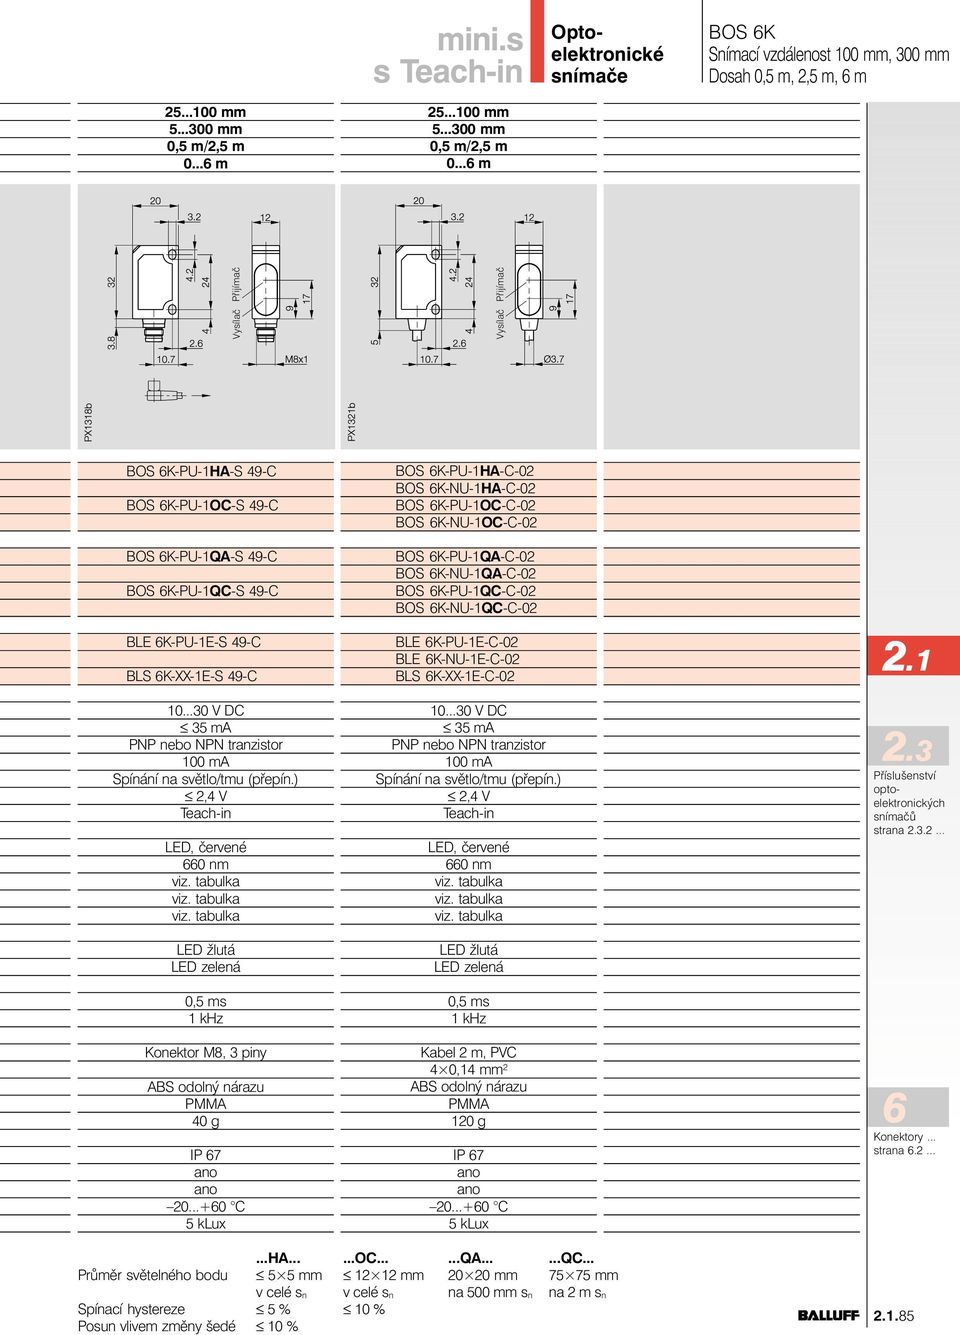 6K-NU-1E-C-02 BLS 6K-XX-1E-C-02 Kabel 2 m, PVC 4 0,14 mm 2 120 g 2.1 2.3 optoelektronických snímačů strana 2.3.2... 6 Konektory... strana 6.2......HA......OC......QA......QC.